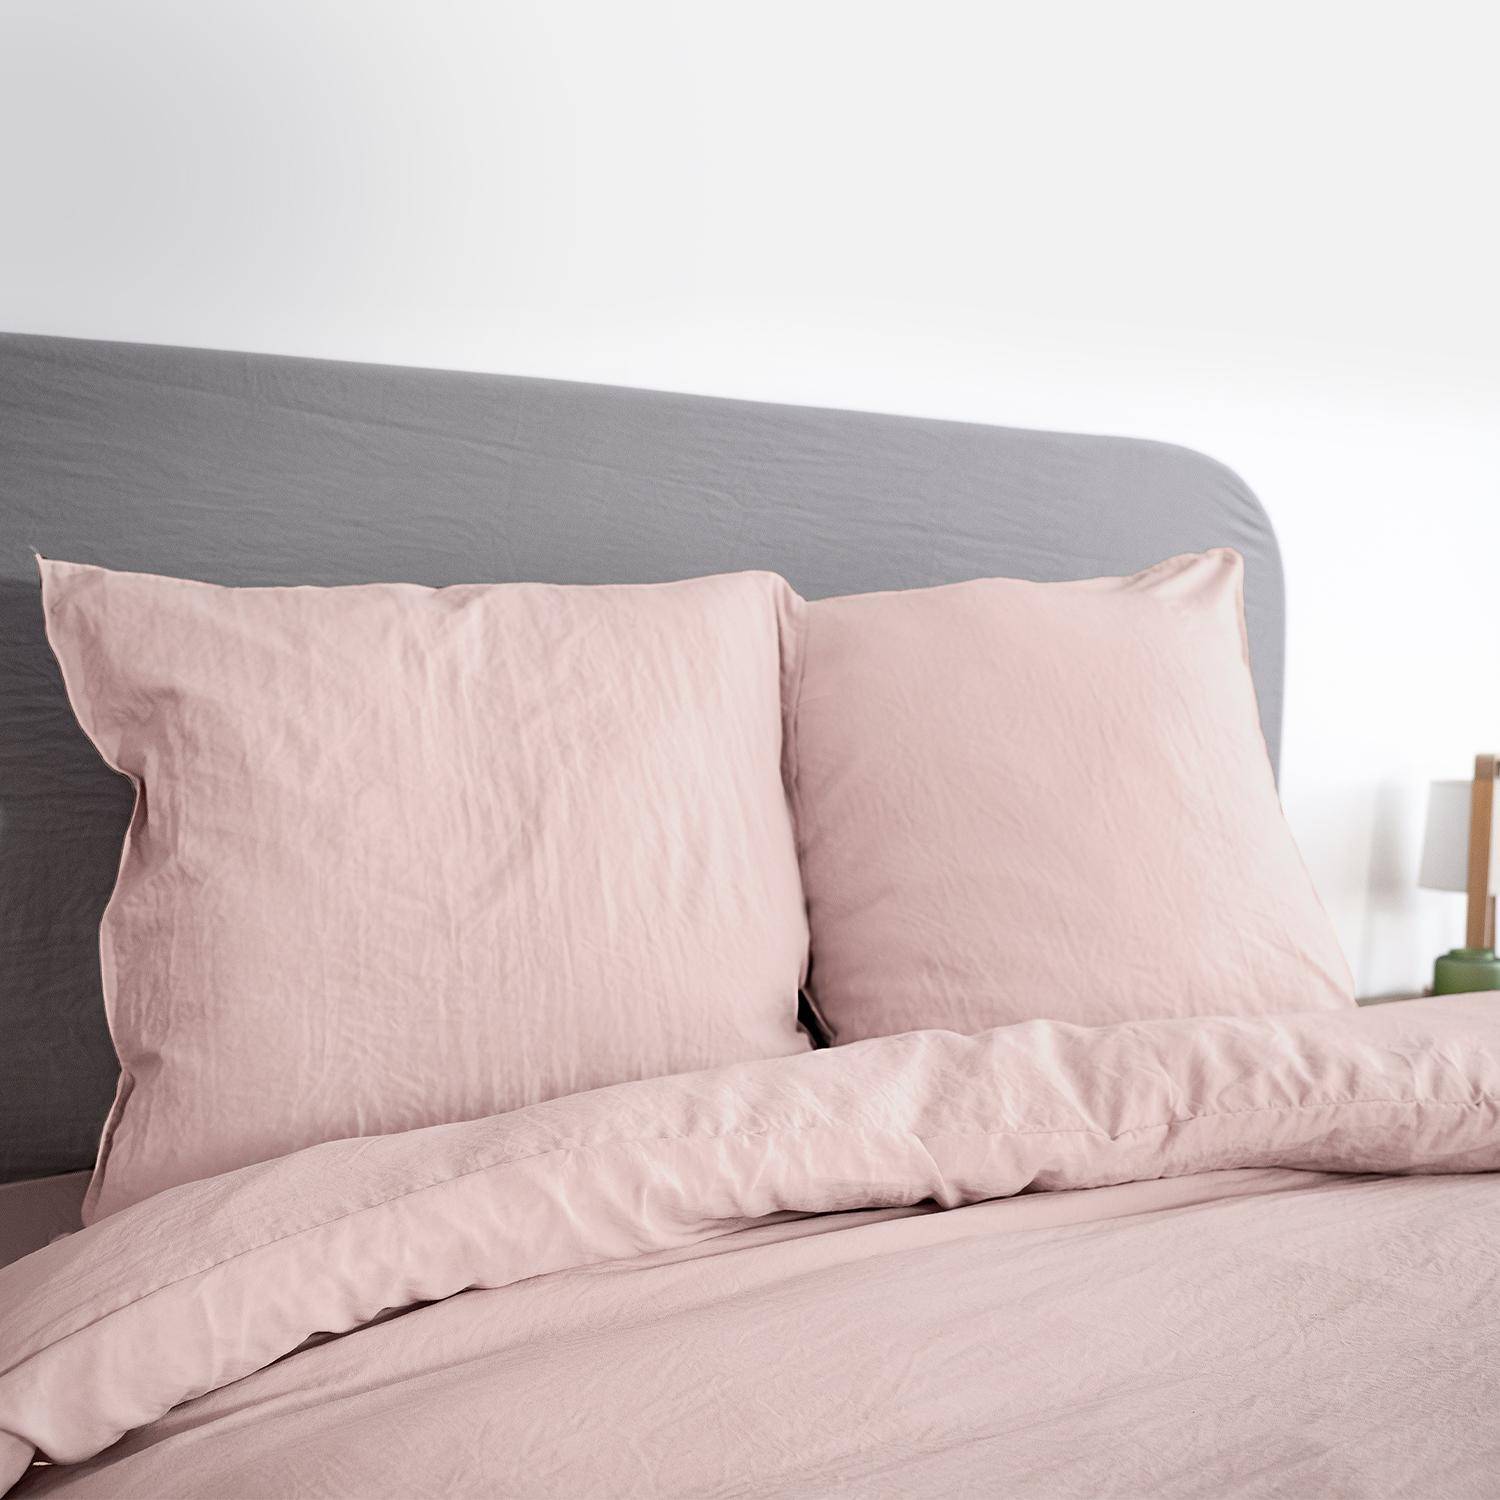 Bettwäsche-Set aus vorgewaschener Mikrofaser in rosa 240 x 220 cm für Doppelbetten, 1 Bettbezug und 2 Kissenbezüge Photo1